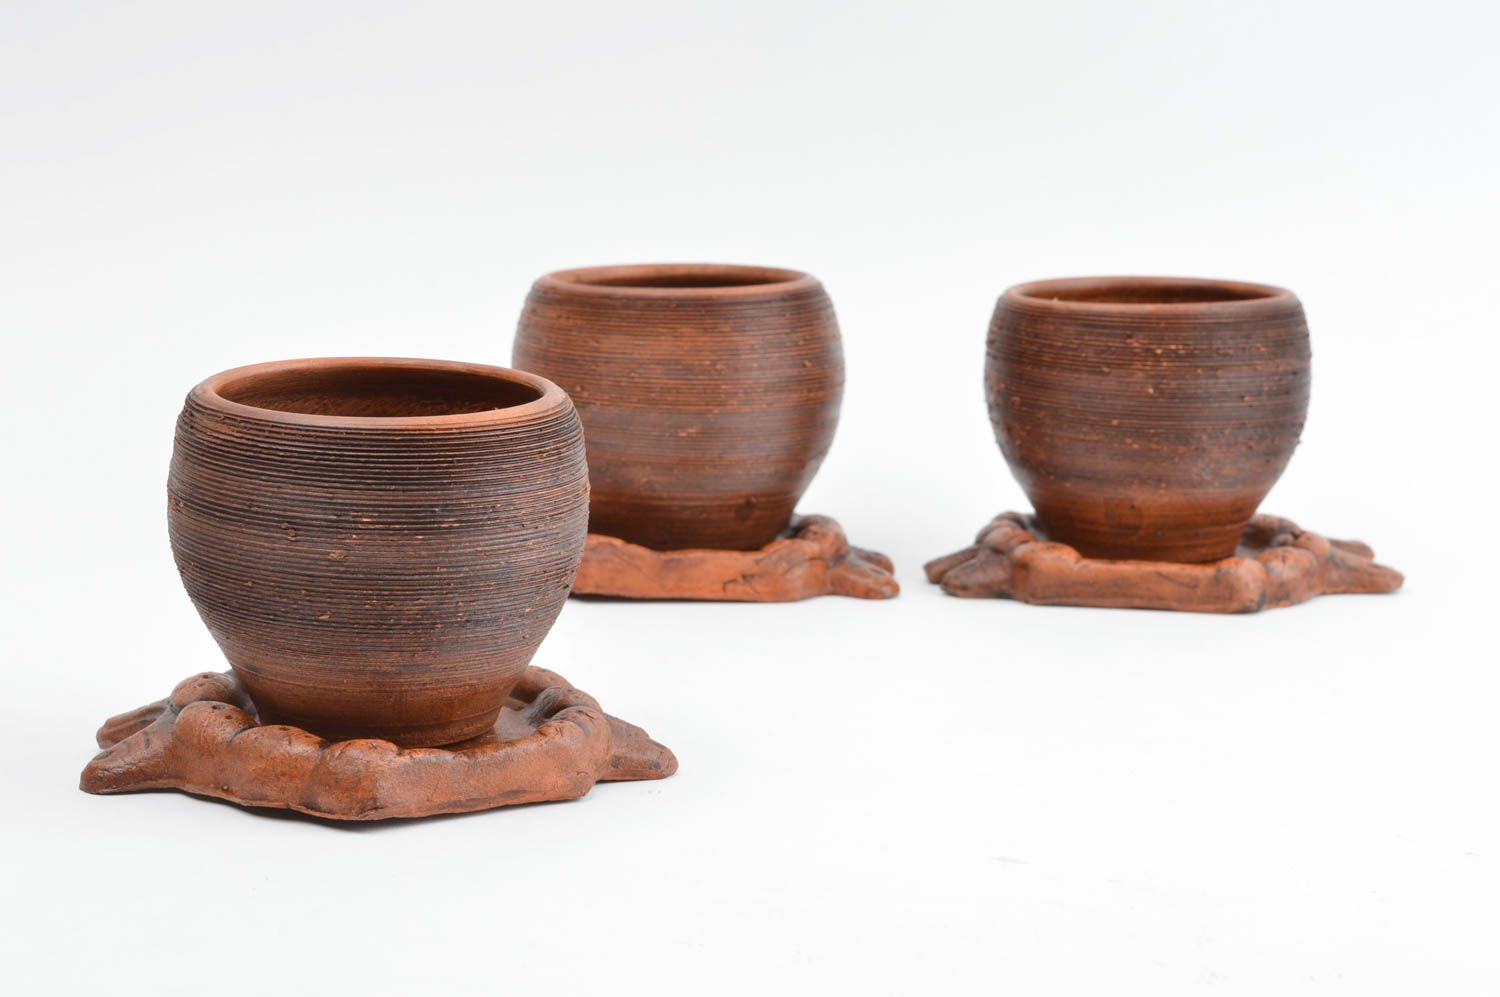 Beautiful handmade flower pot designer ceramic decor unusual accessories photo 3